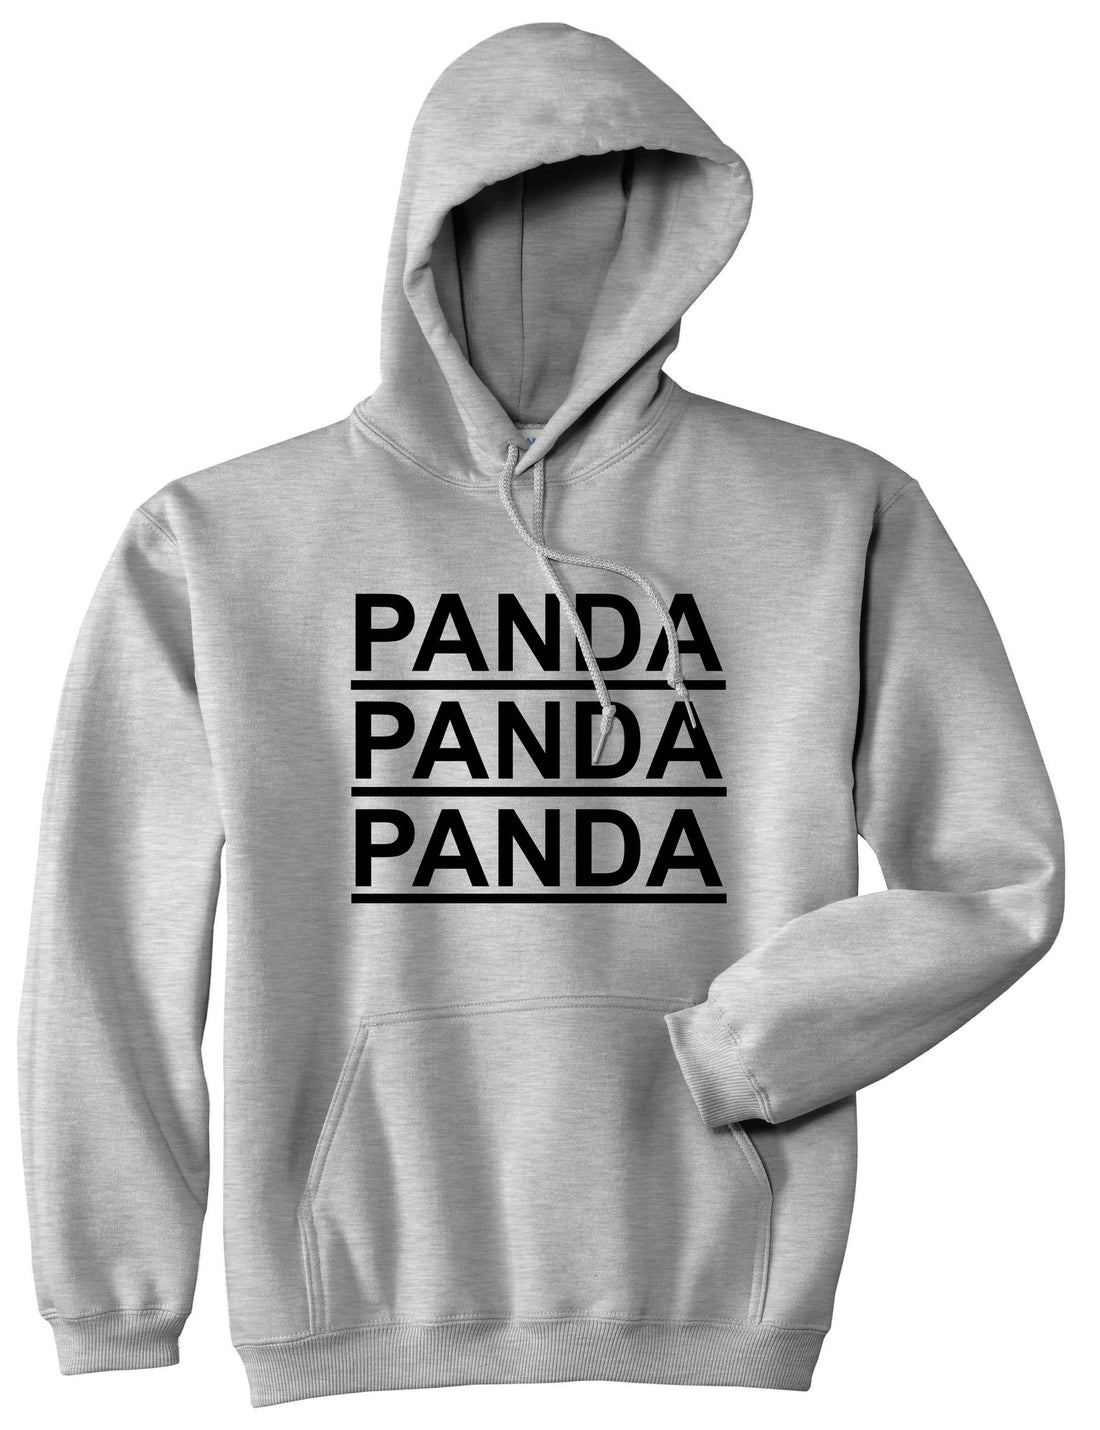 Panda Panda Panda Pullover Hoodie